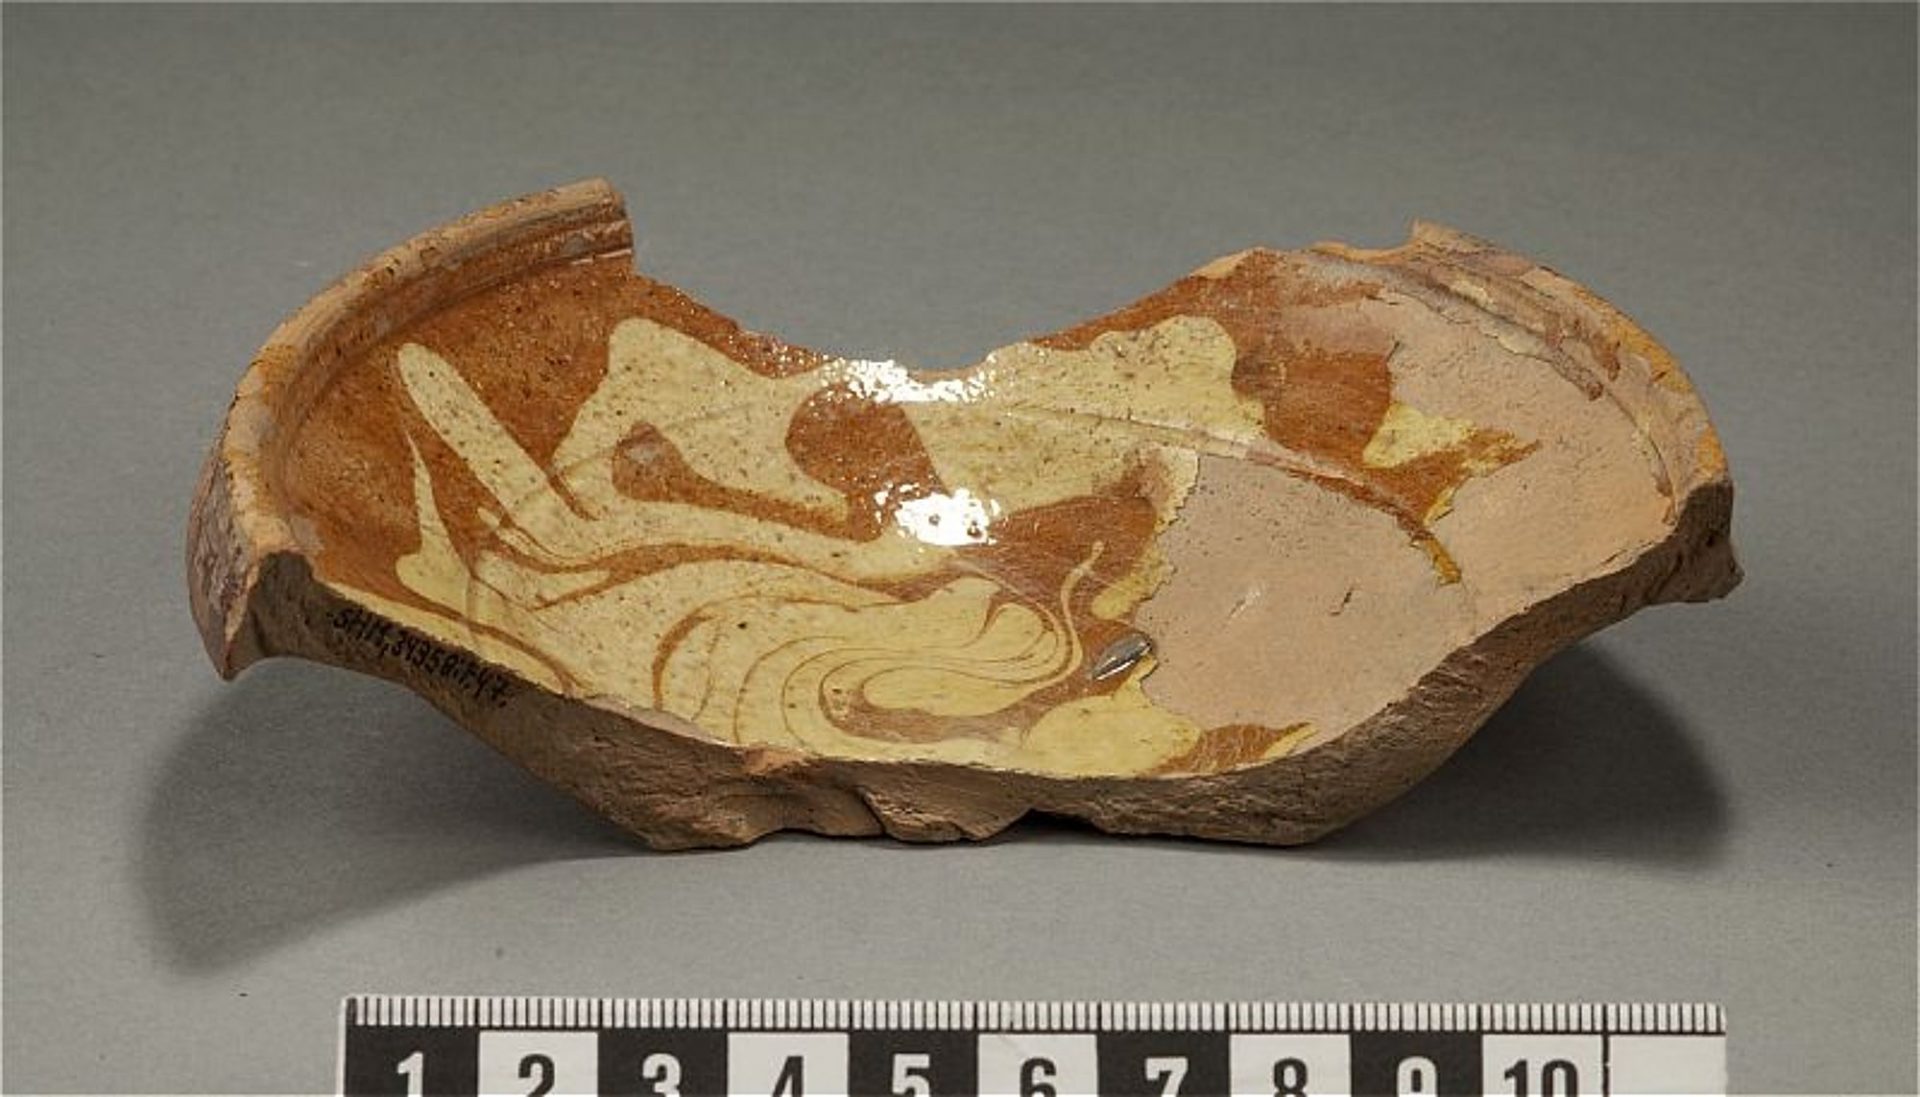 Skärvan av en keramikskål är ldekorerad i rödbrunt och vitt och glaserad. Skålen är vid och har en tjockare kant.